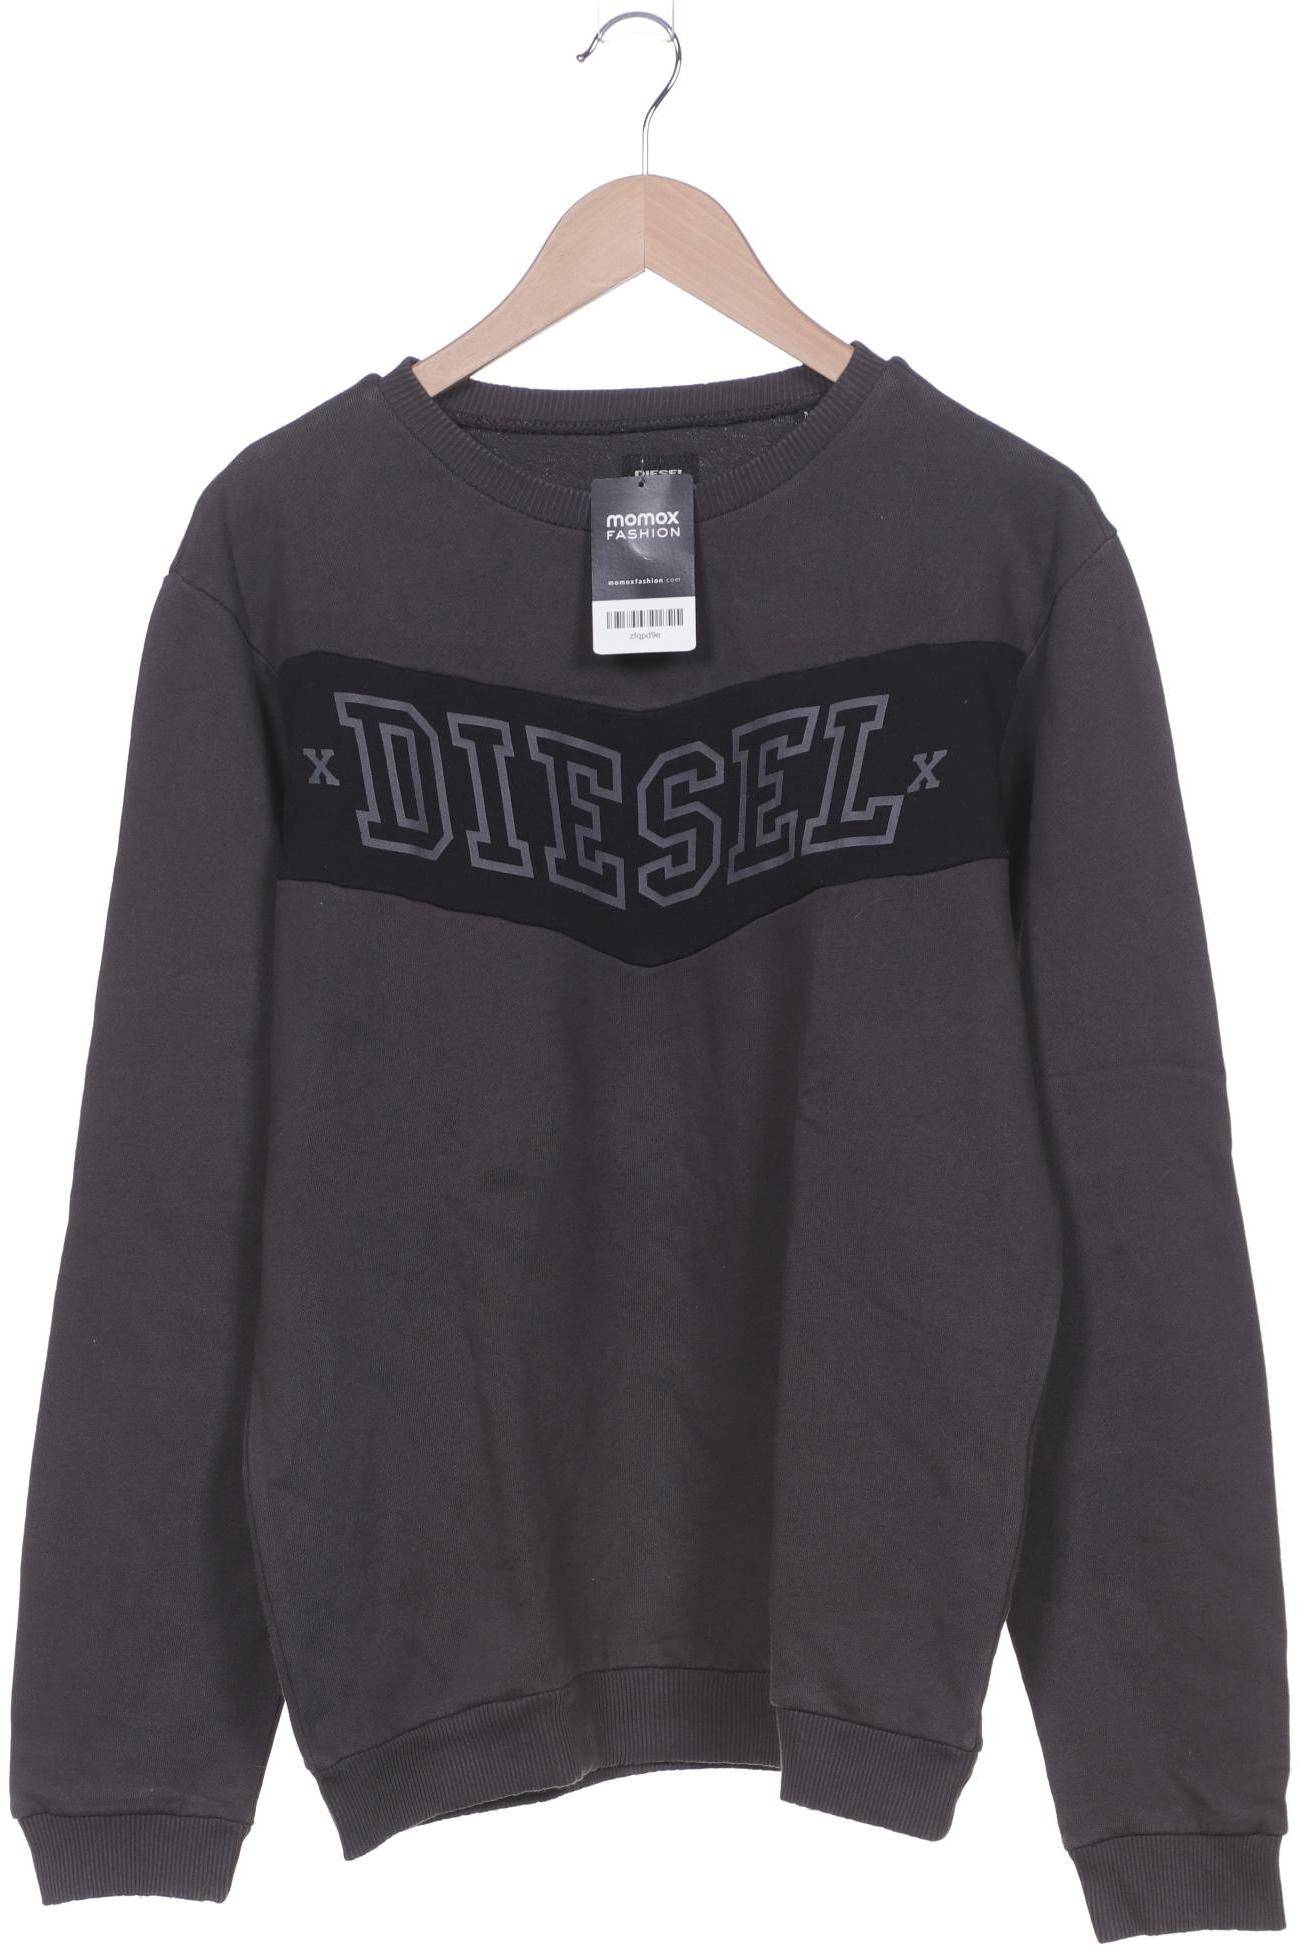 Diesel Herren Sweatshirt, grau von Diesel